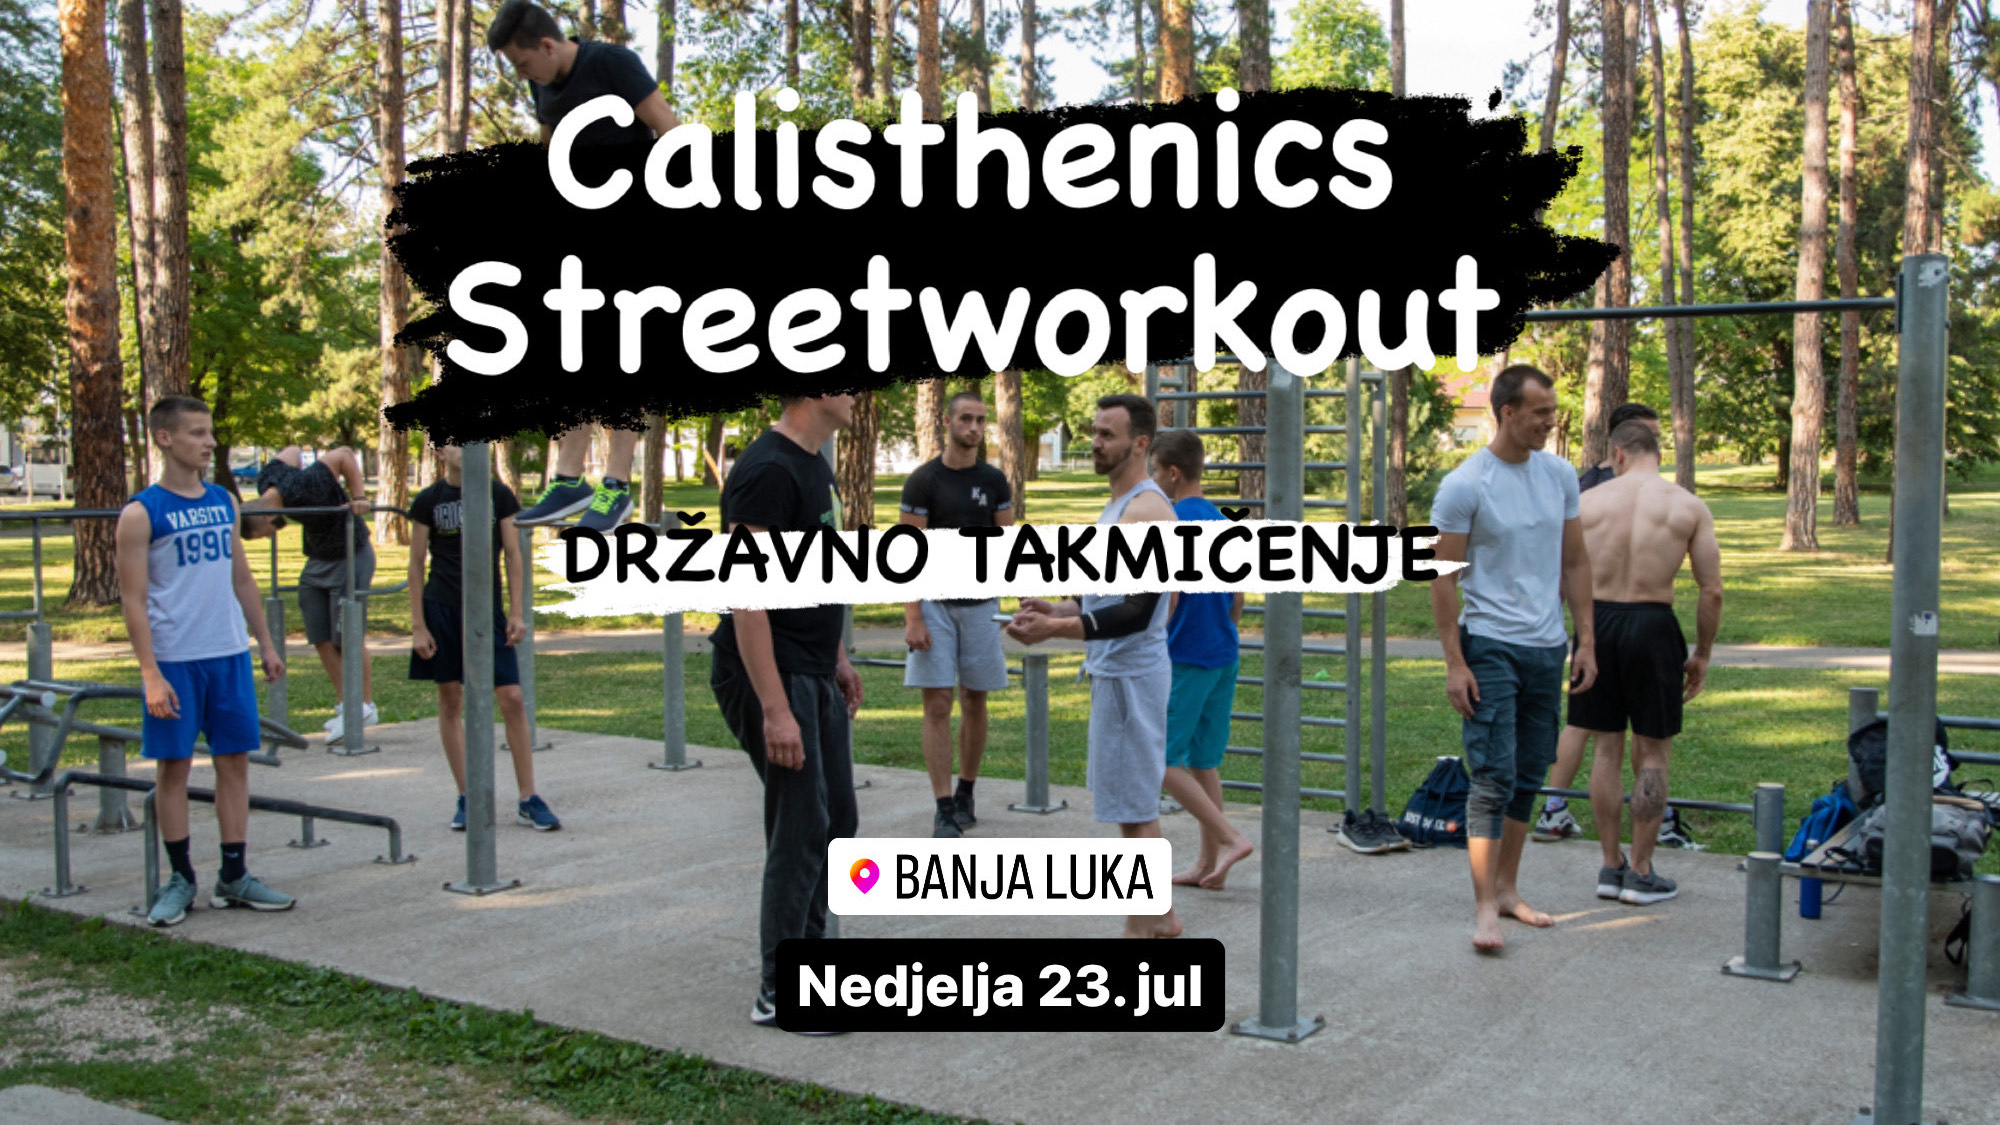 ODRŽAVA SE 23. JULA Prijavite se na državno “Calisthenics & Streetworkout” takmičenje